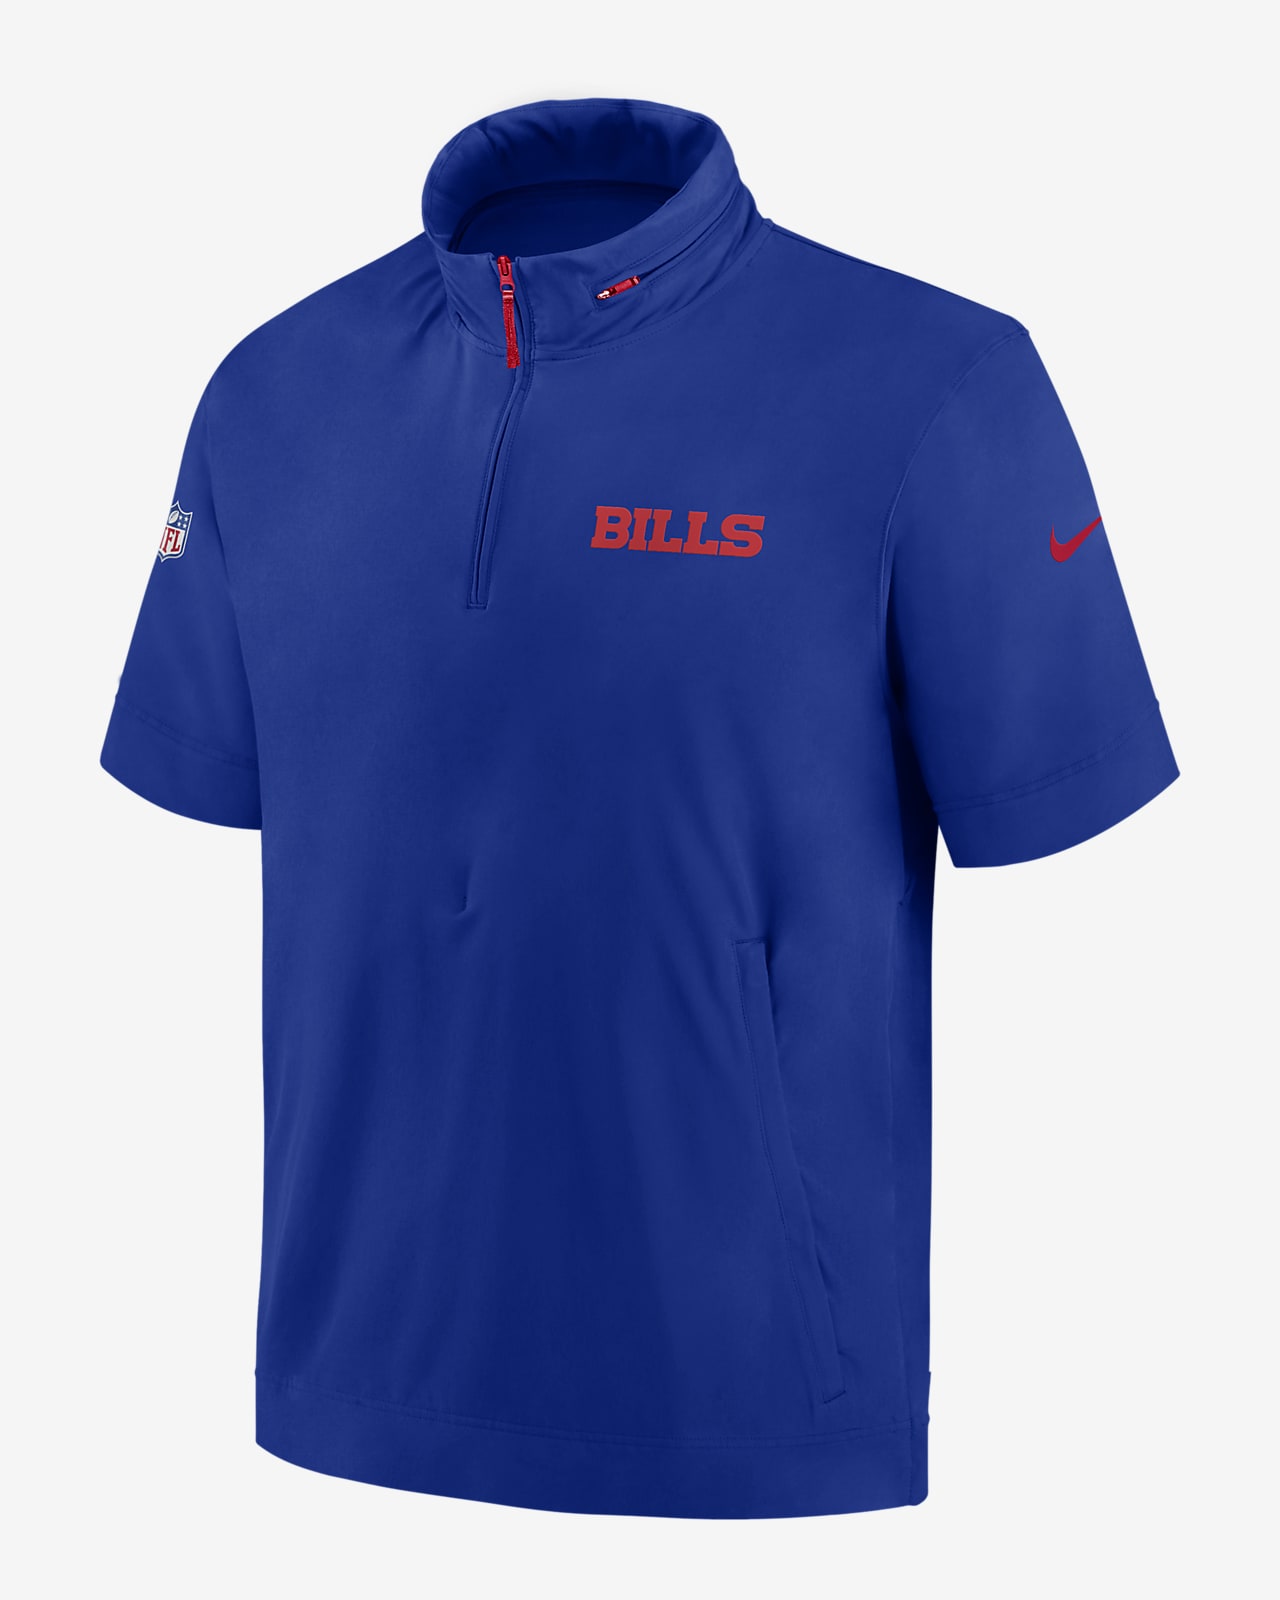 Chamarra de manga corta Nike de la NFL con gorro y medio cierre para hombre Buffalo Bills Sideline Coach